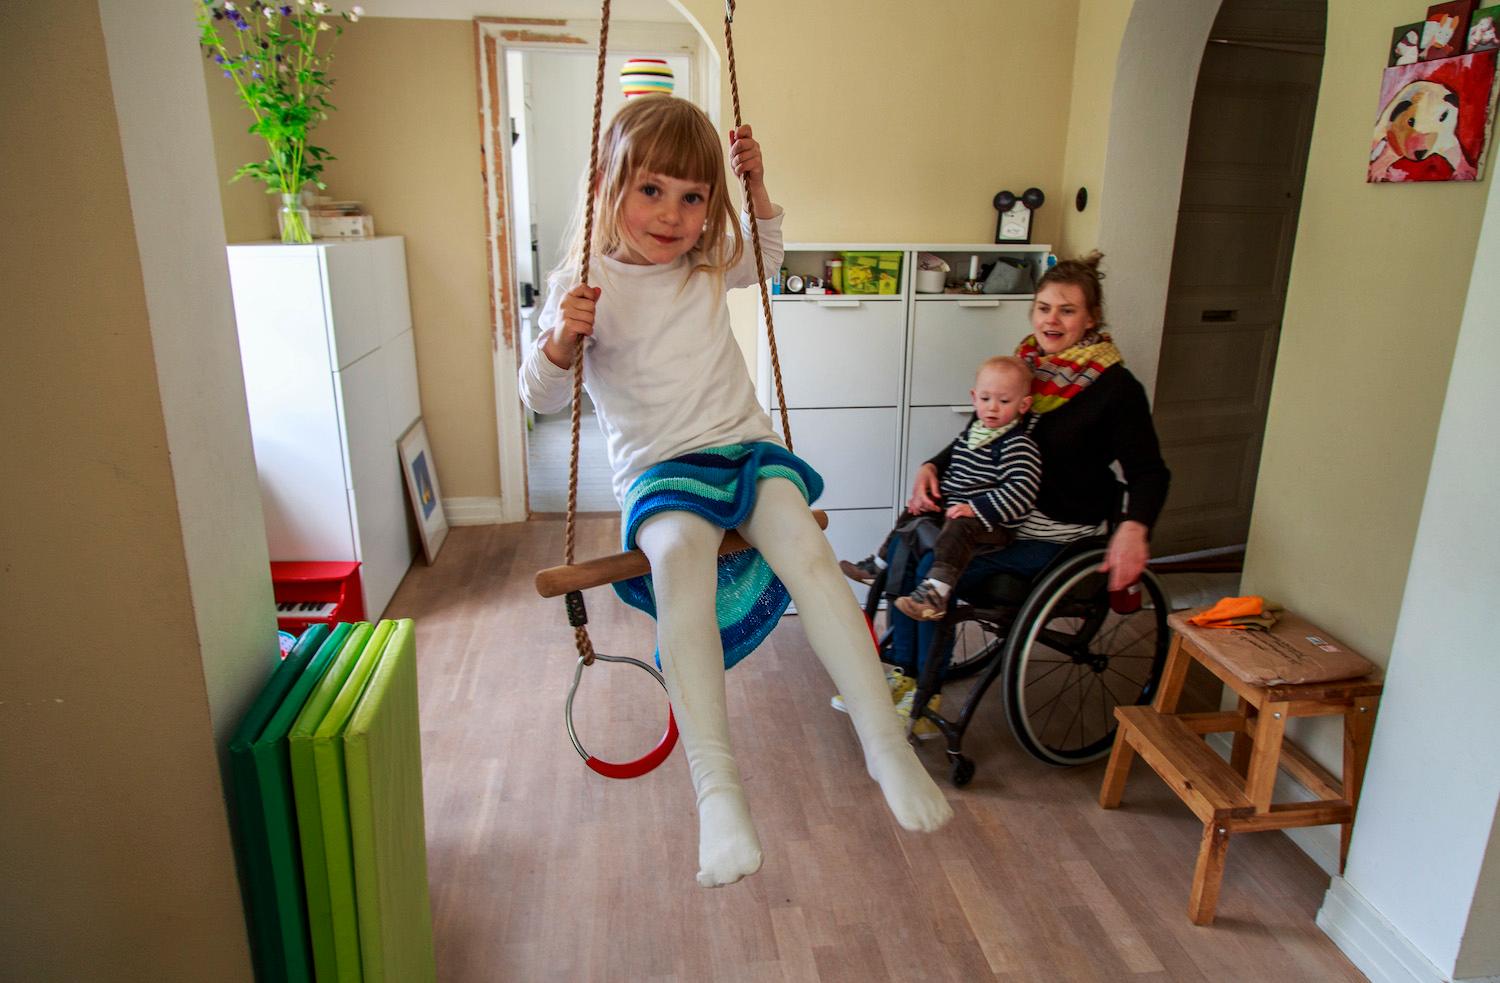 "Att vara förälder i rullstol kräver lite mer planering och tid", säger Anna Oredsson, mamma till Maja, 4, och Otto, 1,5 år.